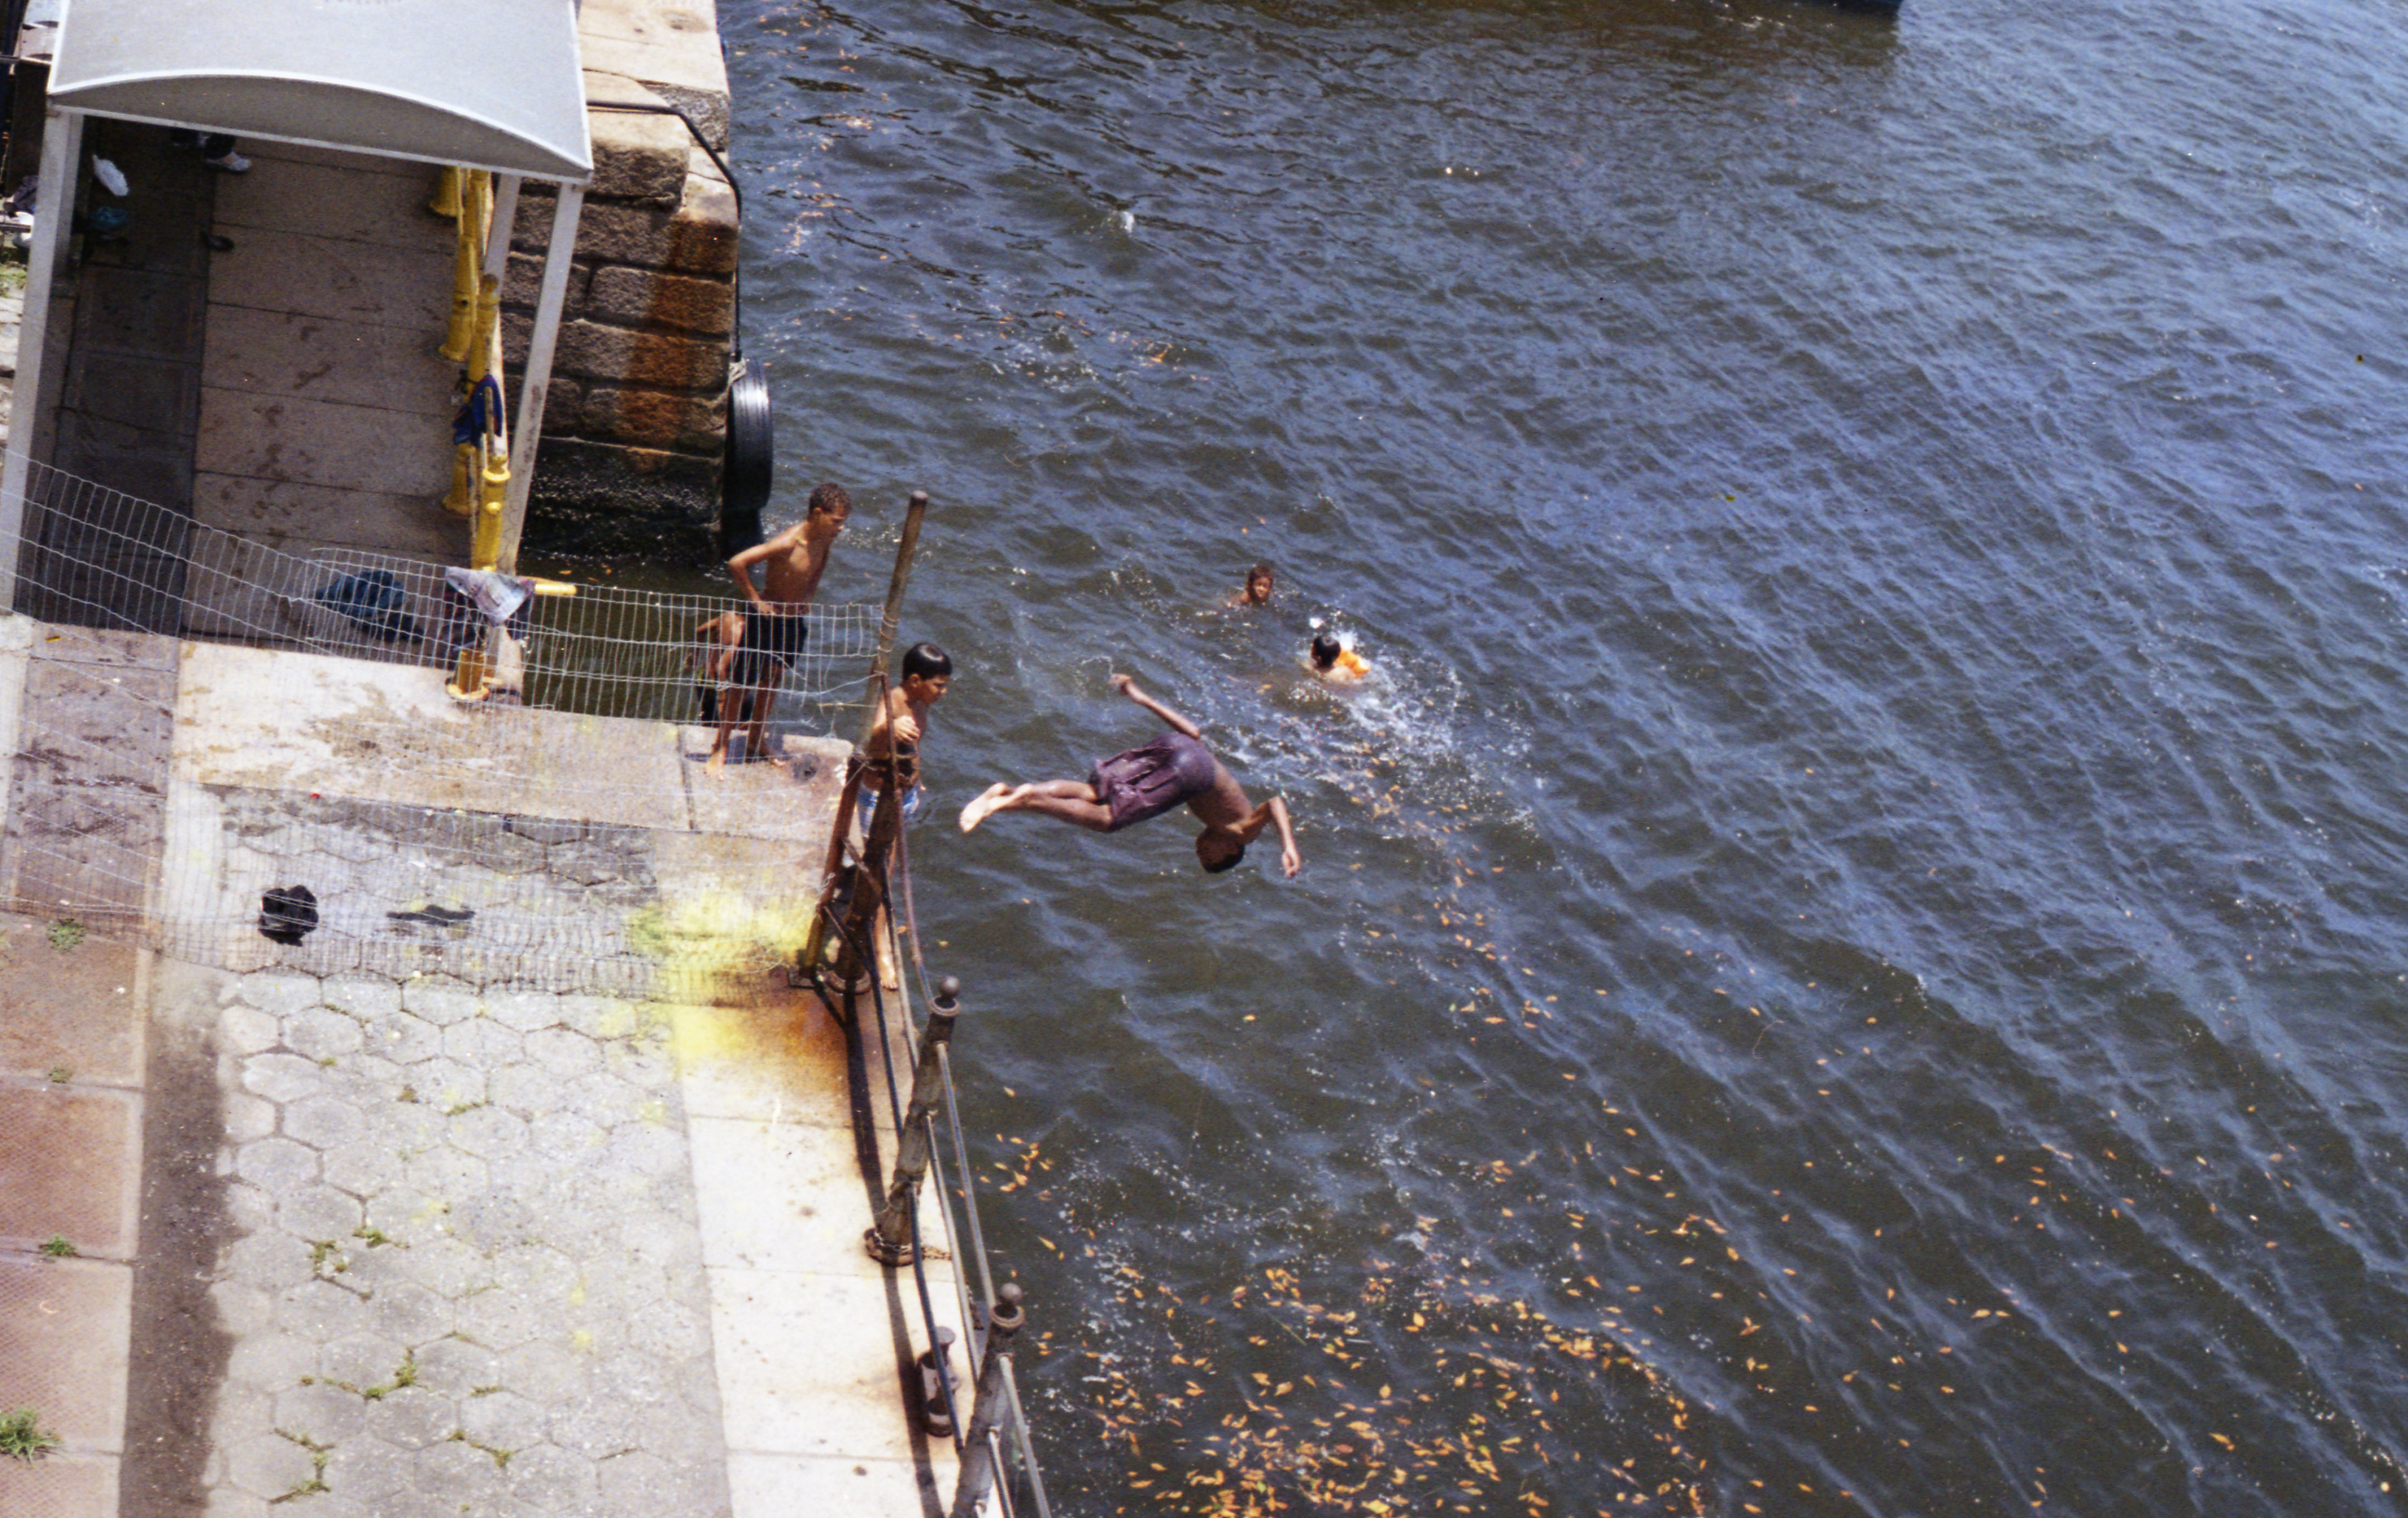 crianças pulam de um deck na água.